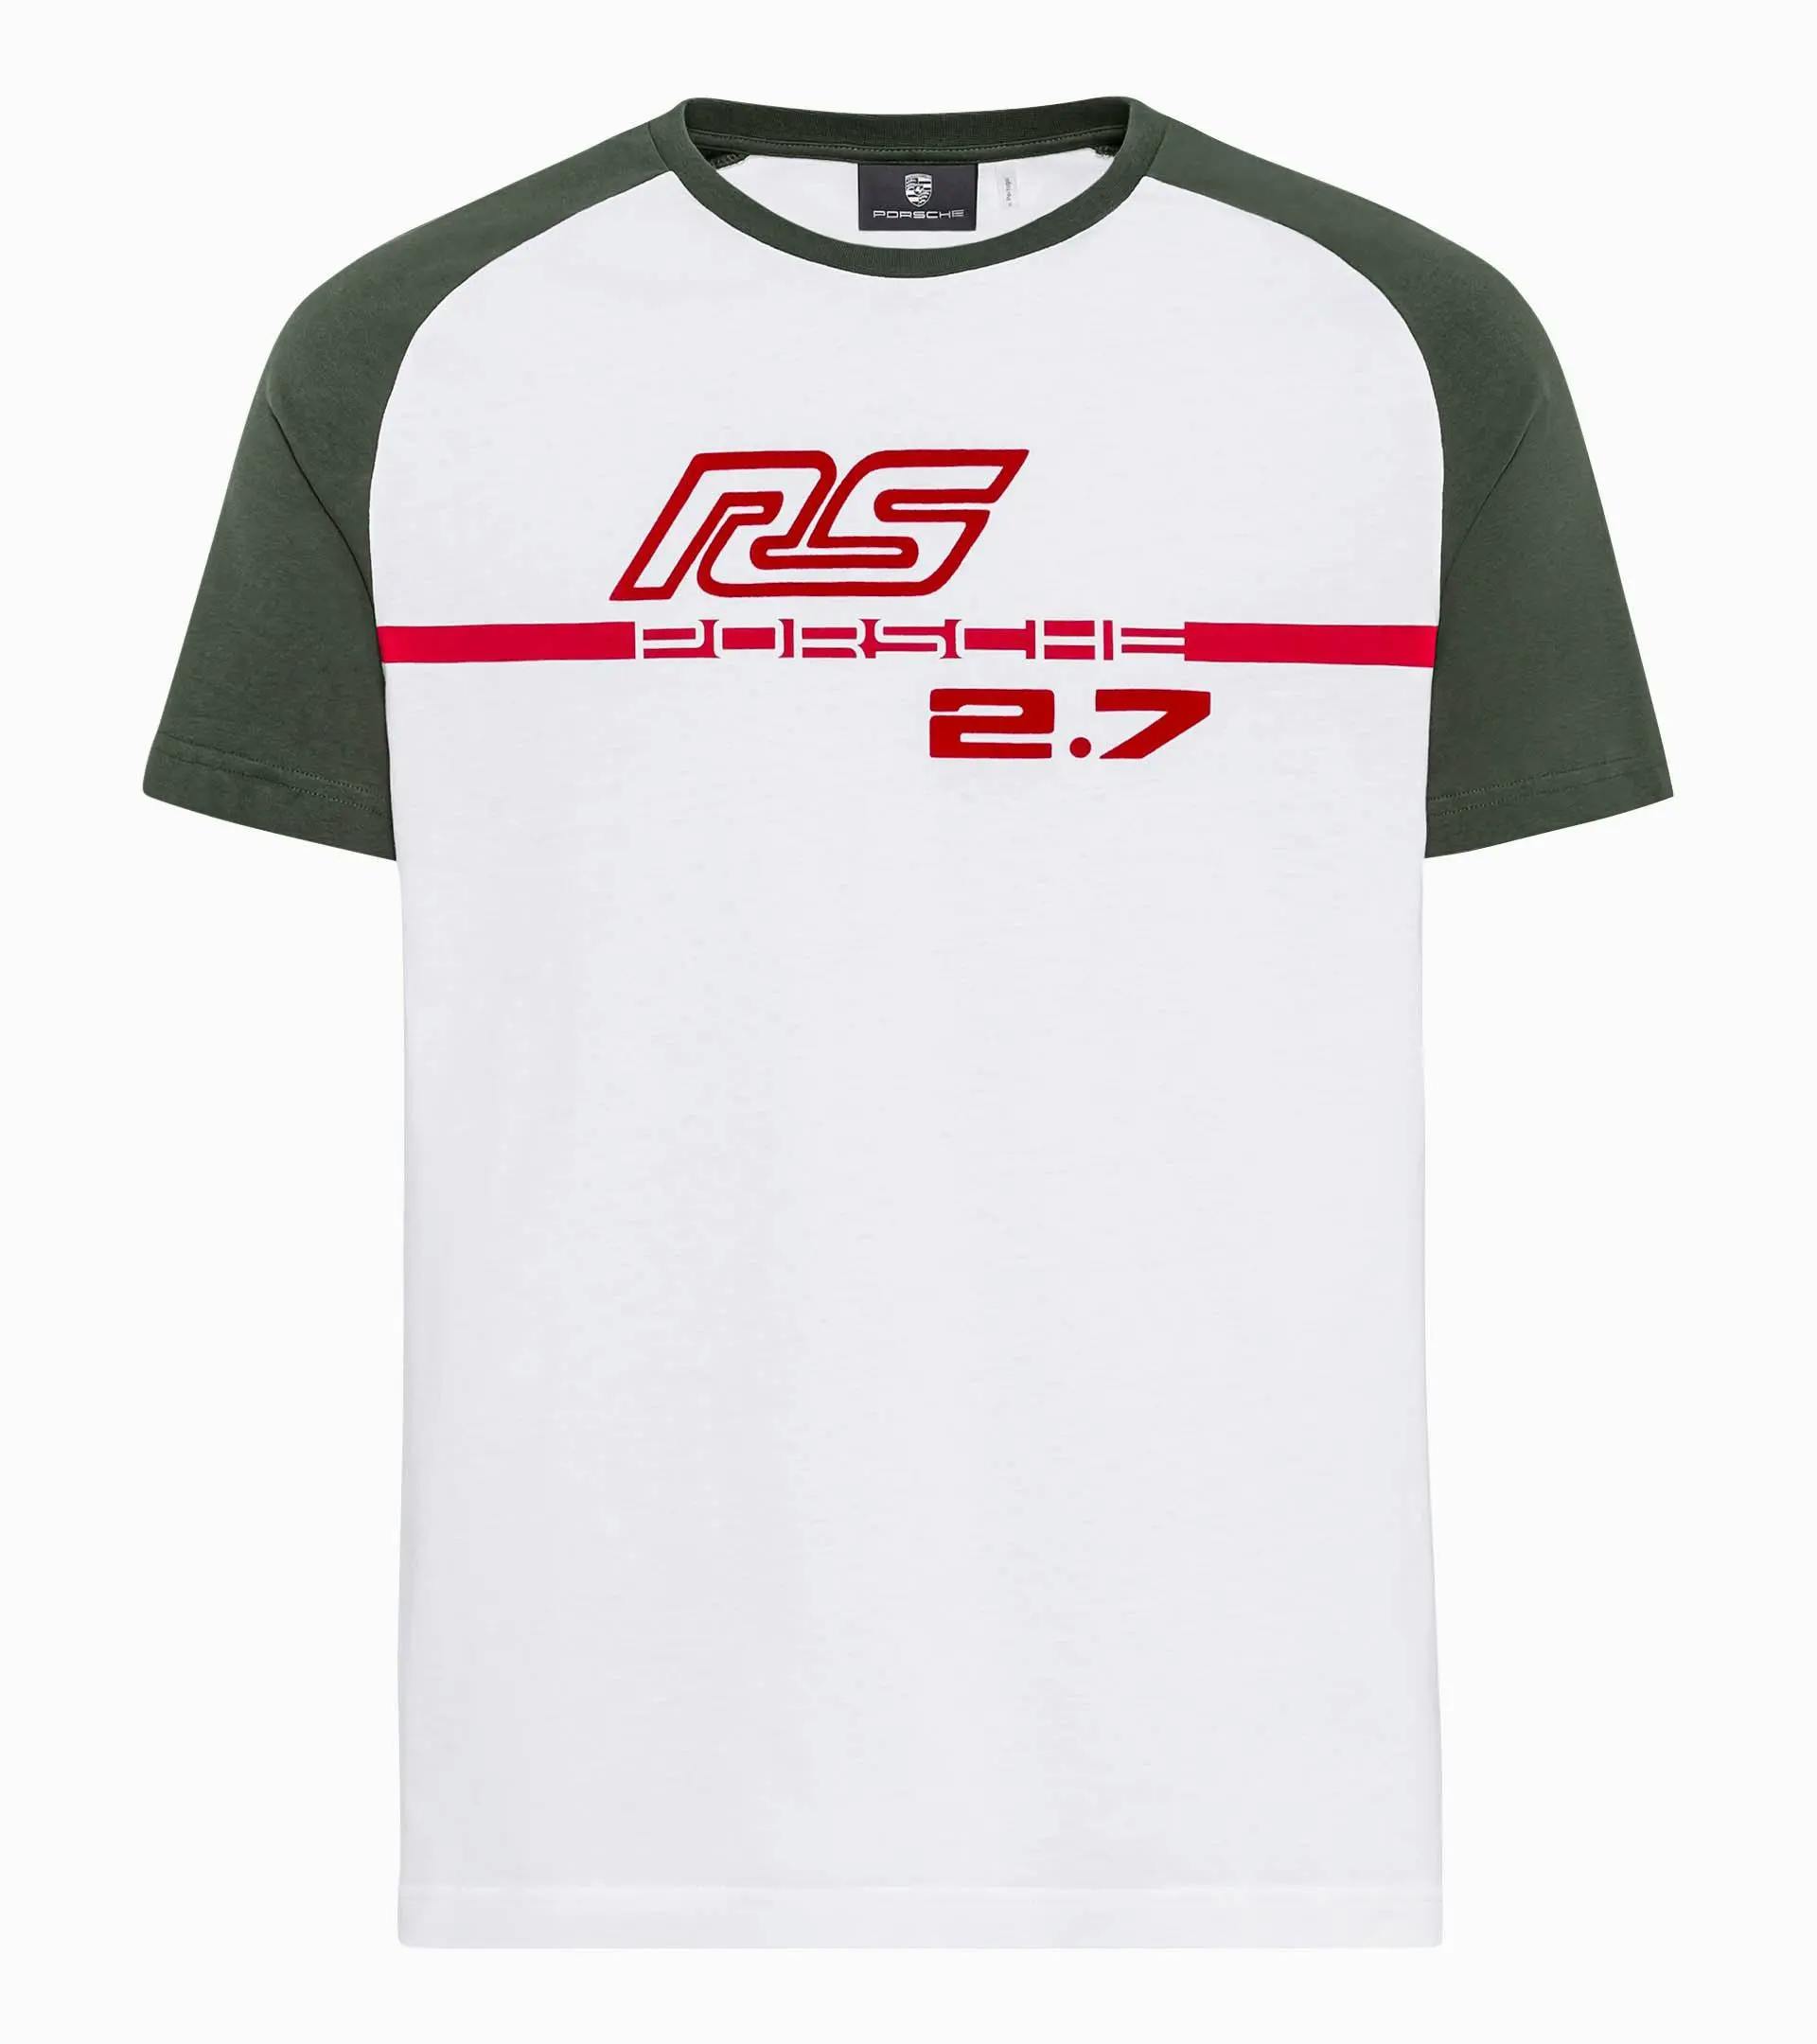 Camiseta – RS 2.7 1